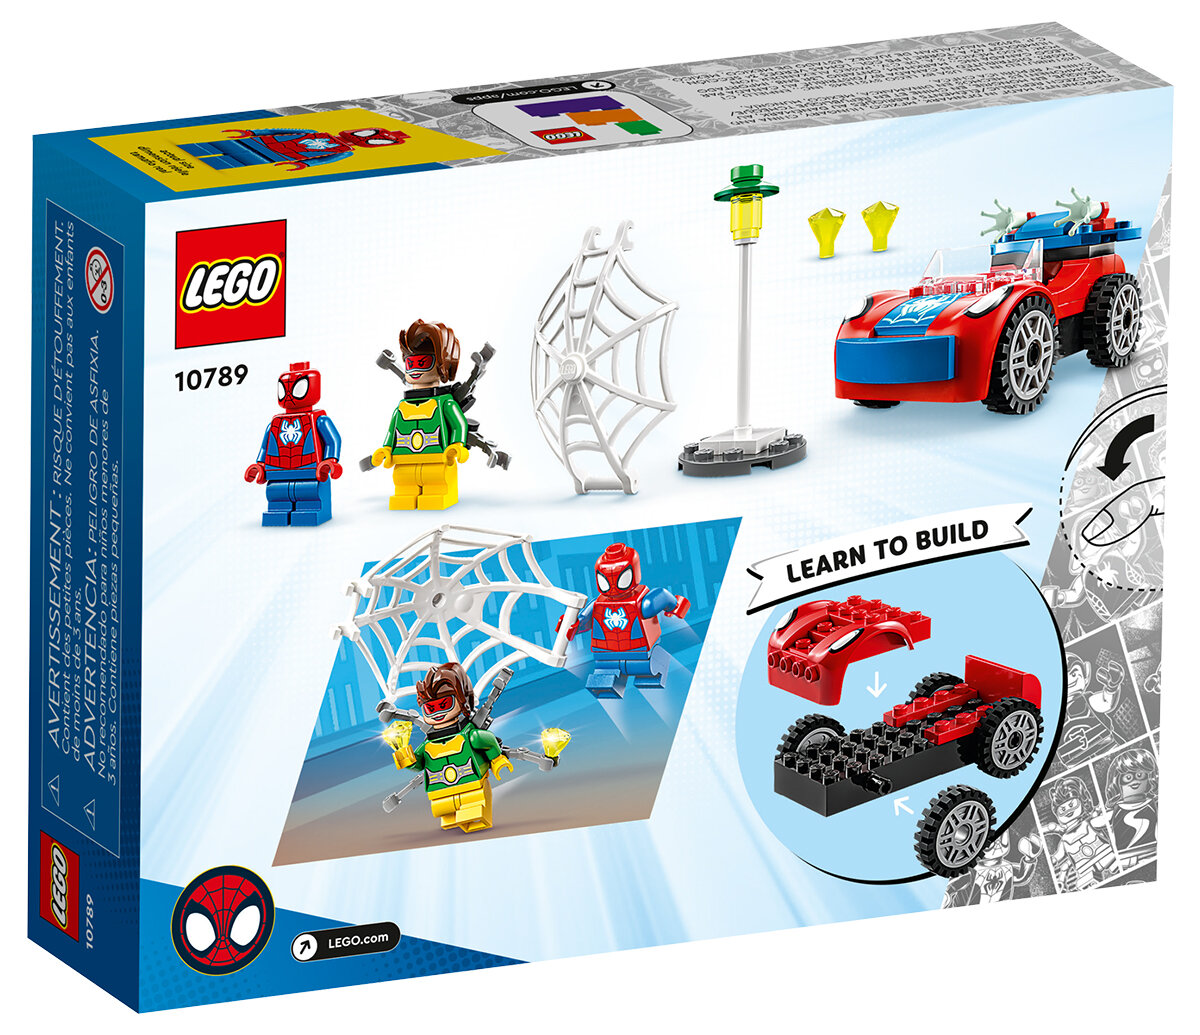 LEGO Spidey et son incroyable Friends Tarifs 2024 confirmés